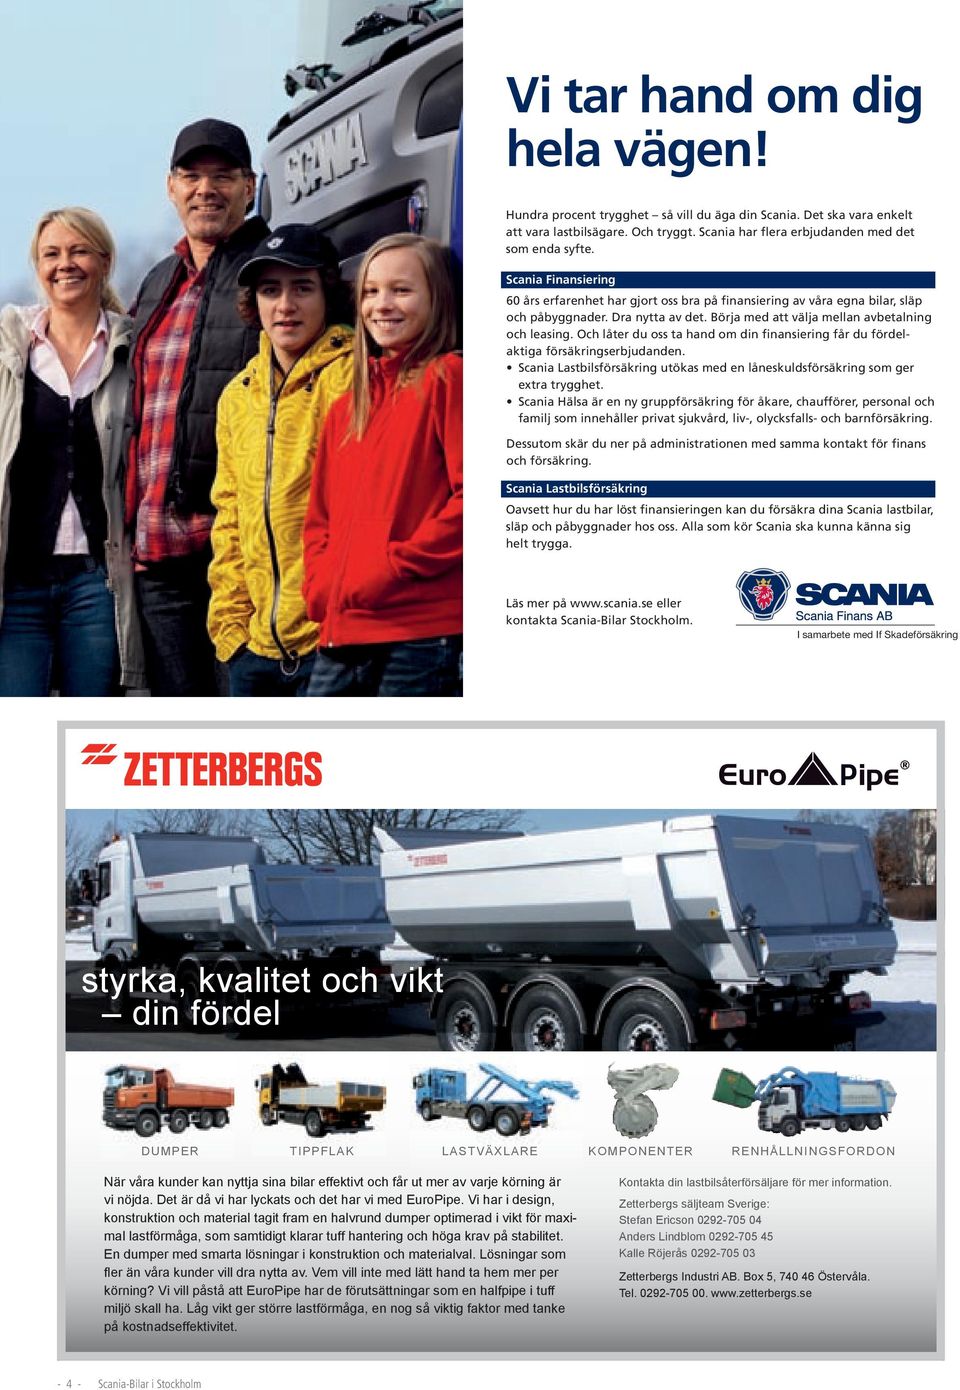 Och låter du oss ta hand om din finansiering får du fördelaktiga försäkringserbjudanden. Scania Lastbilsförsäkring utökas med en låneskuldsförsäkring som ger extra trygghet.